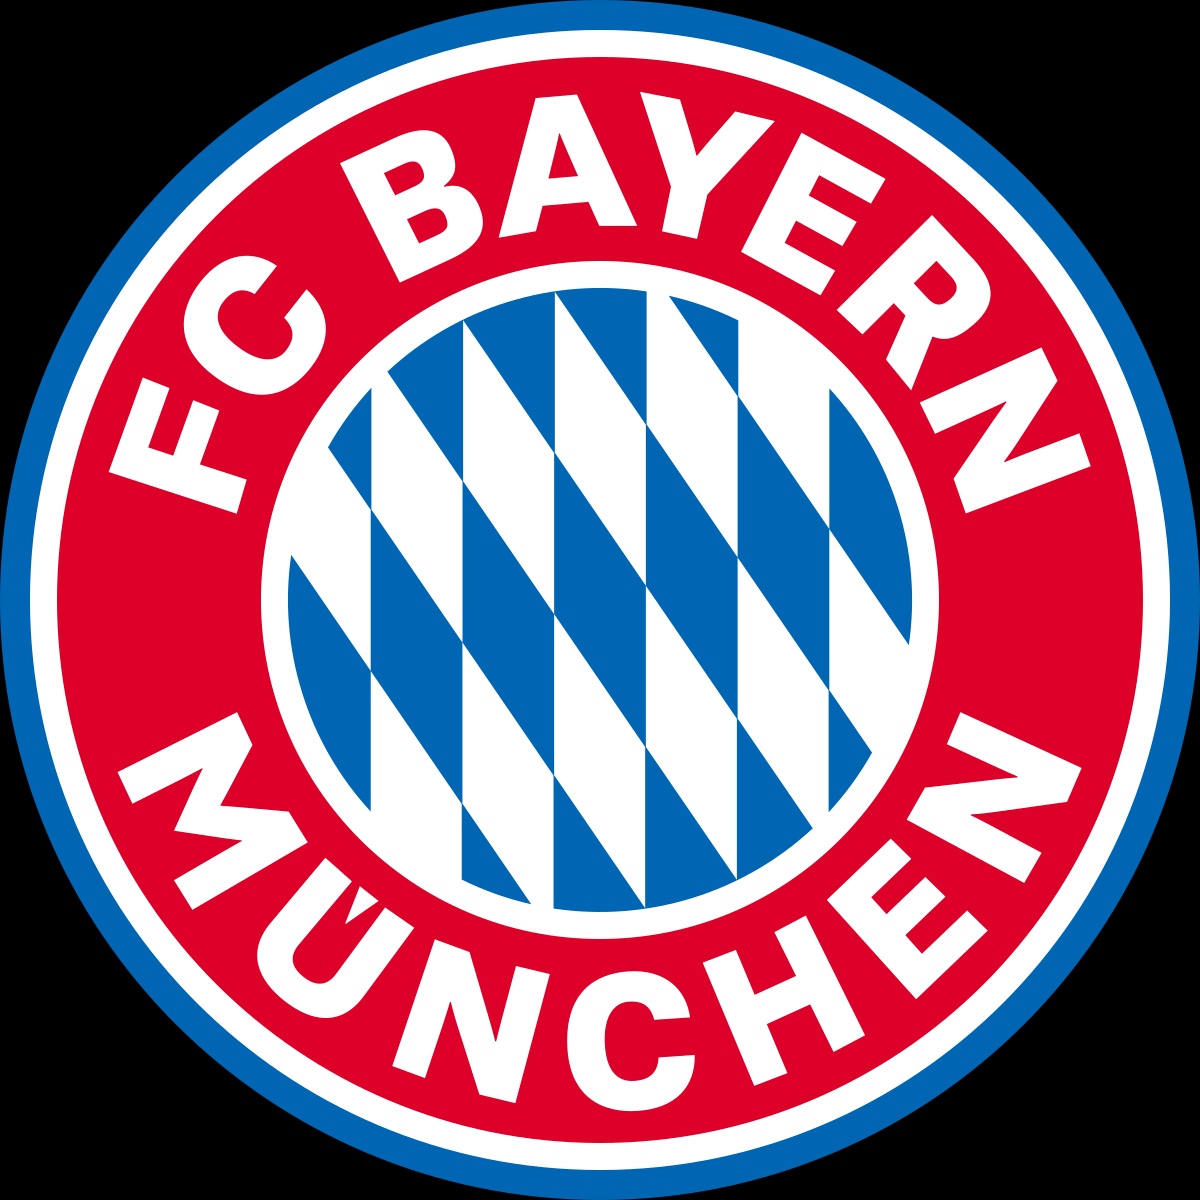 Đội hình xuất sắc nhất Bayern Munich trong hơn 100 năm qua